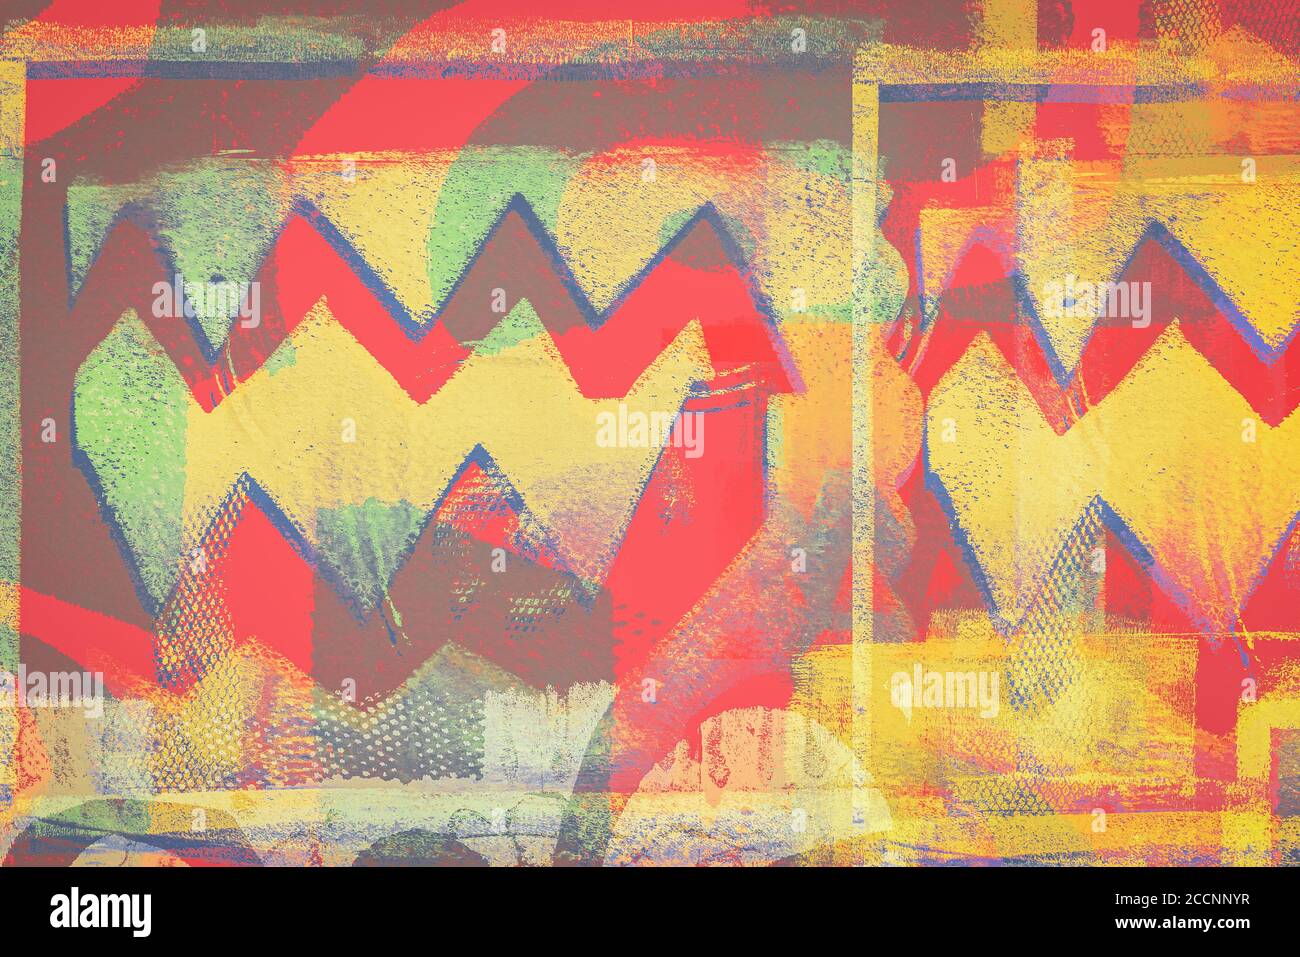 Supporti misti sfondo creativo fatto di forme geometriche testurizzate in toni rosso-giallo Foto Stock